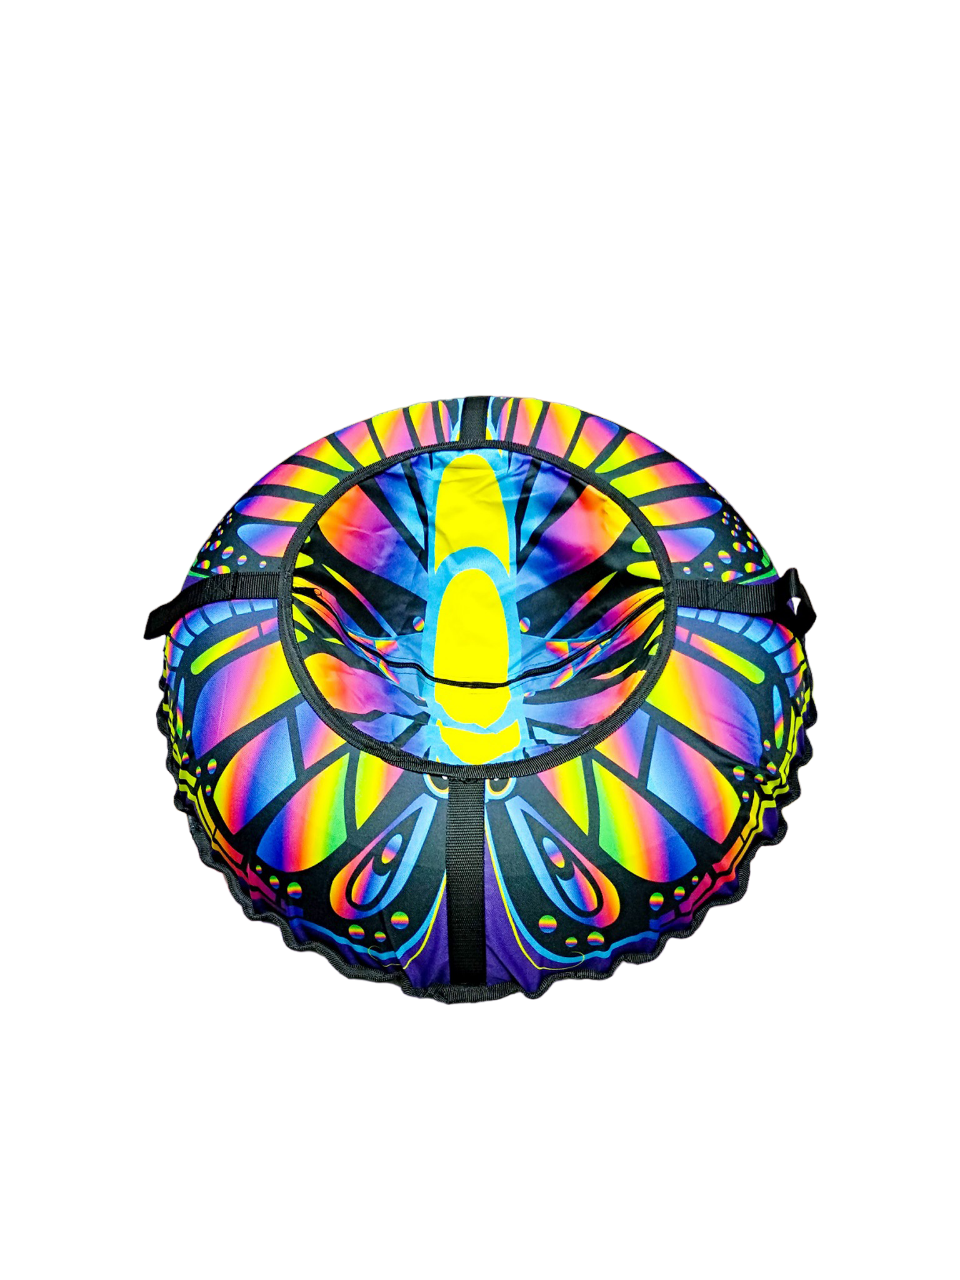 Тюбинг ватрушка Fani&Sani разноцветный 84101, 80 см